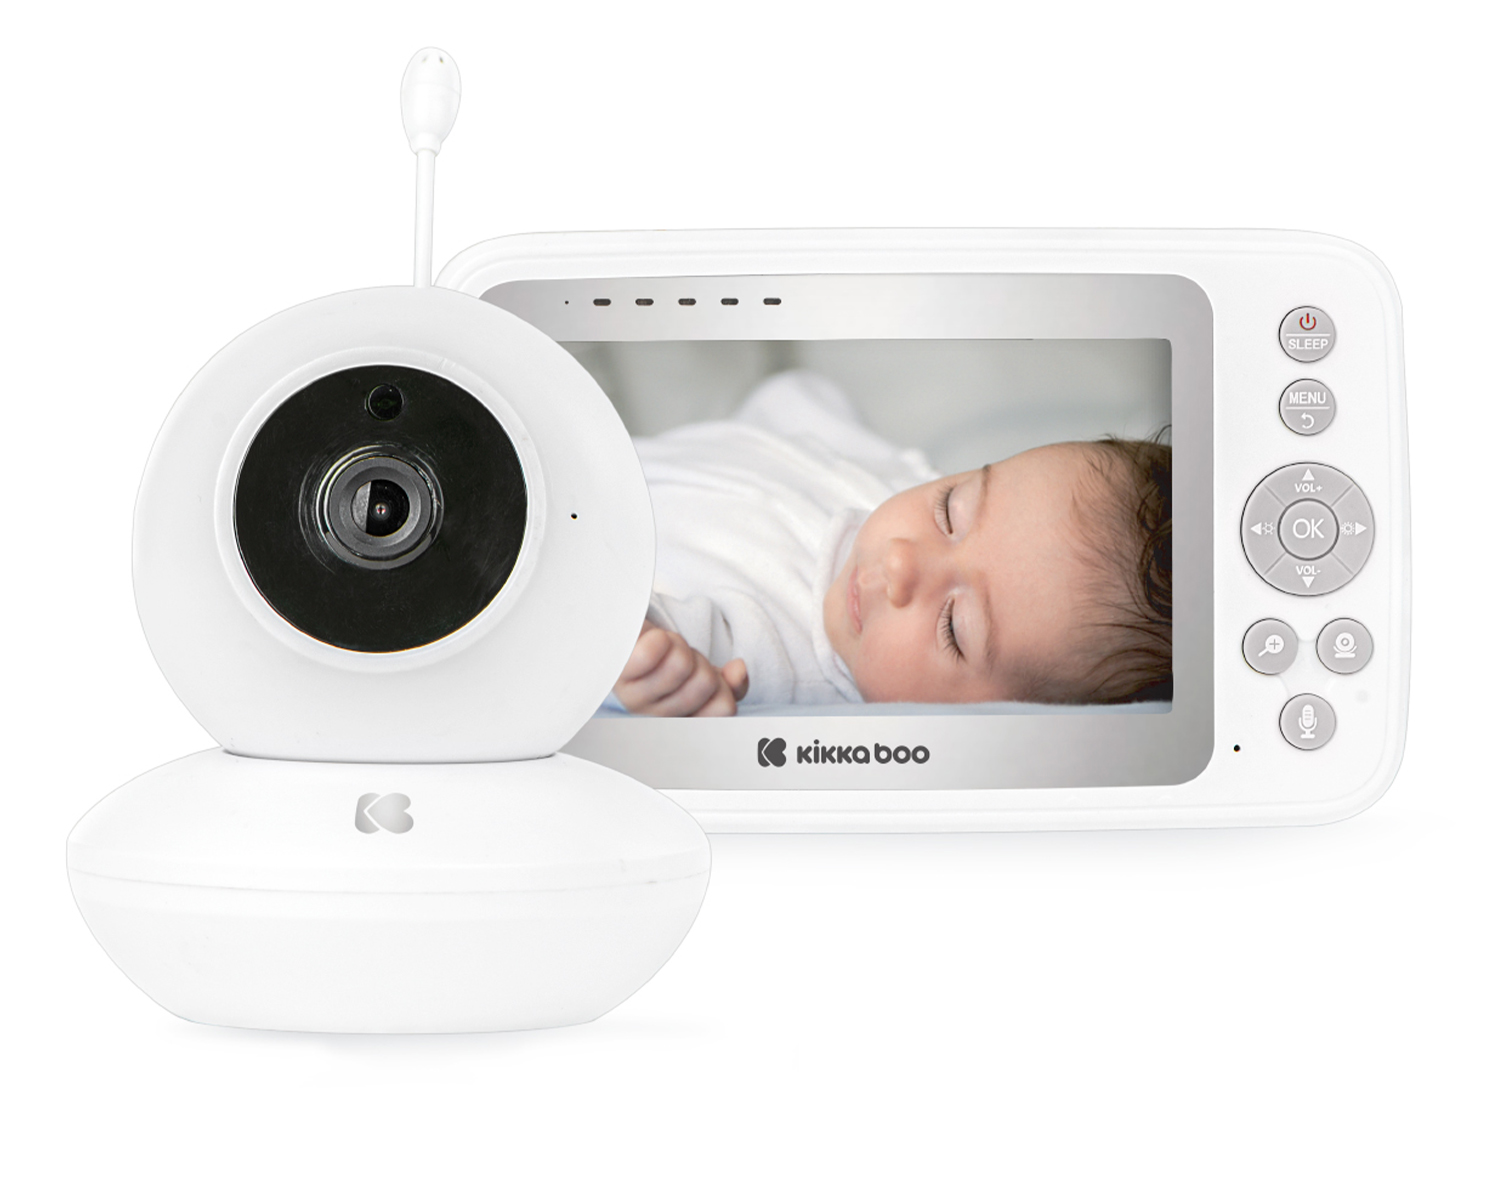 دوربین اتاق کودک به شما این امکان را میدهد که از فاصله دور کودک خود را ببینید